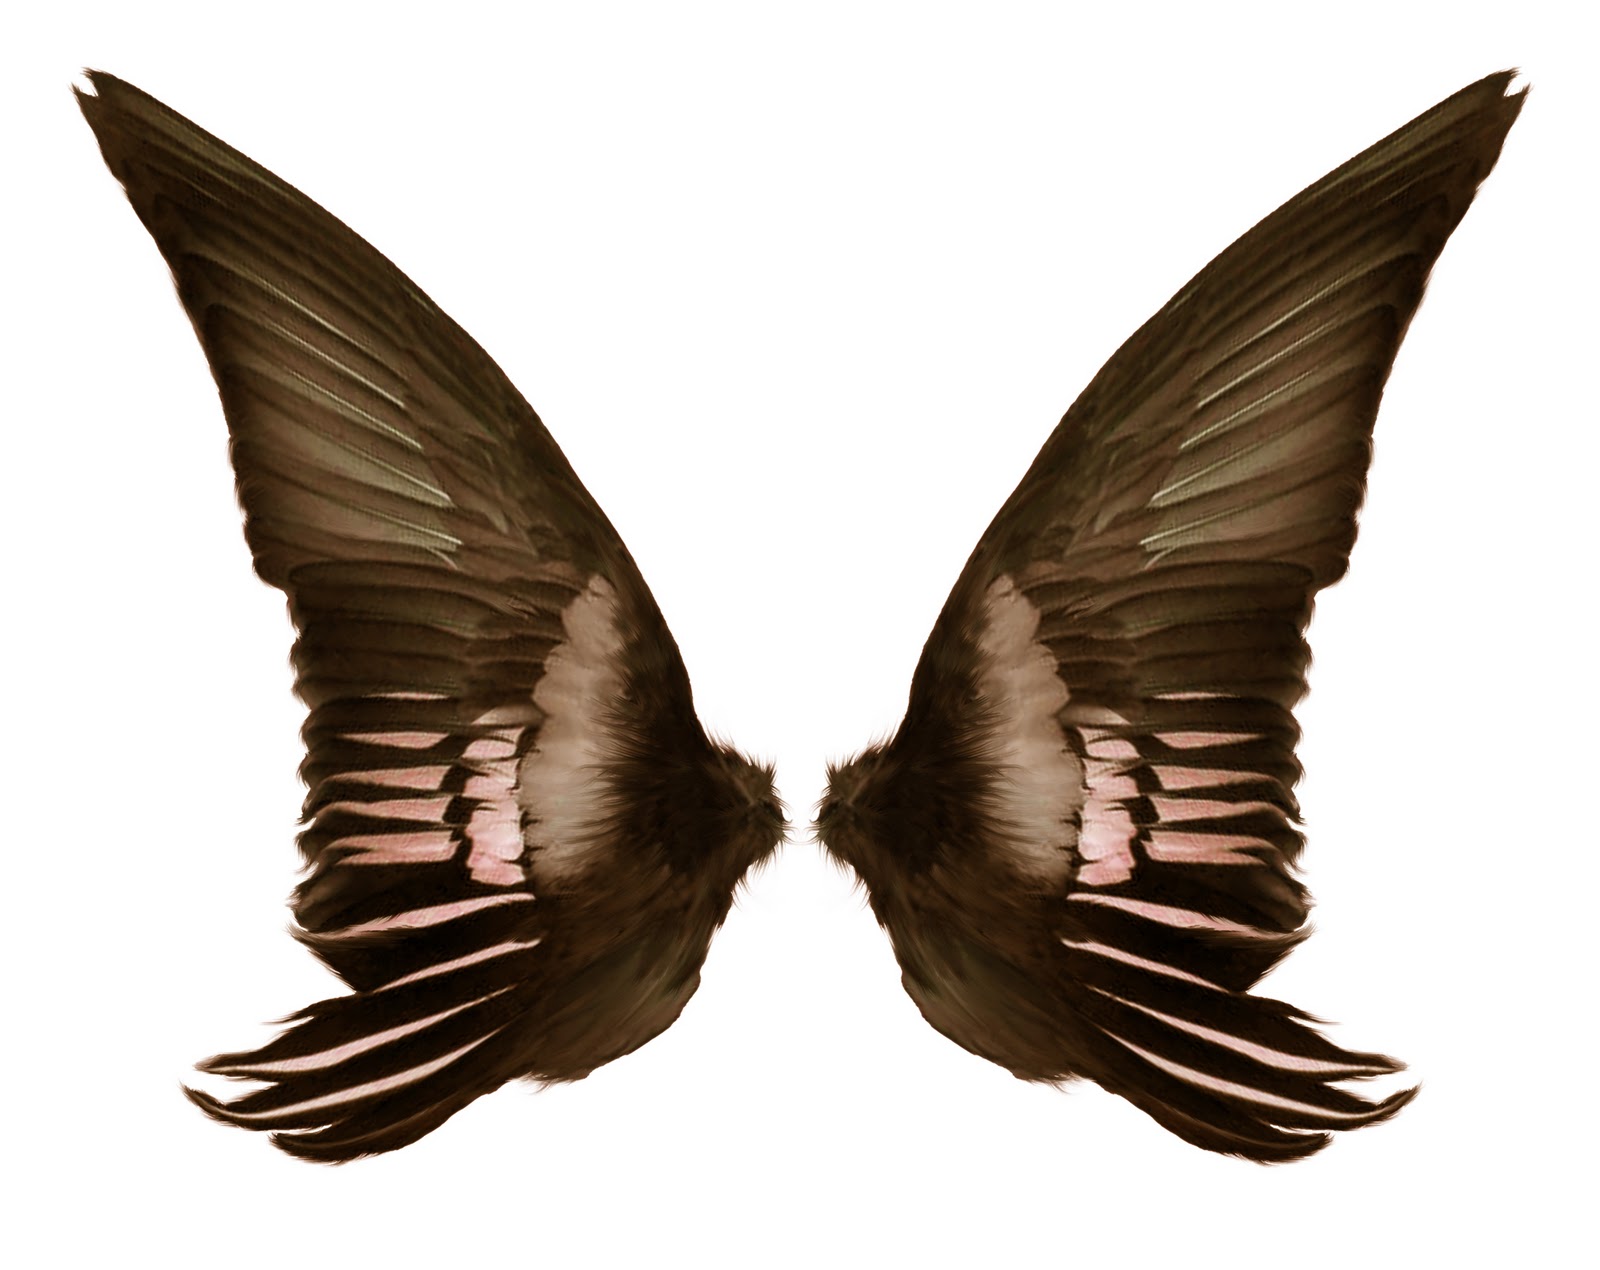 Psd Files Free Download: Dark wings, wings costume, black wings ...